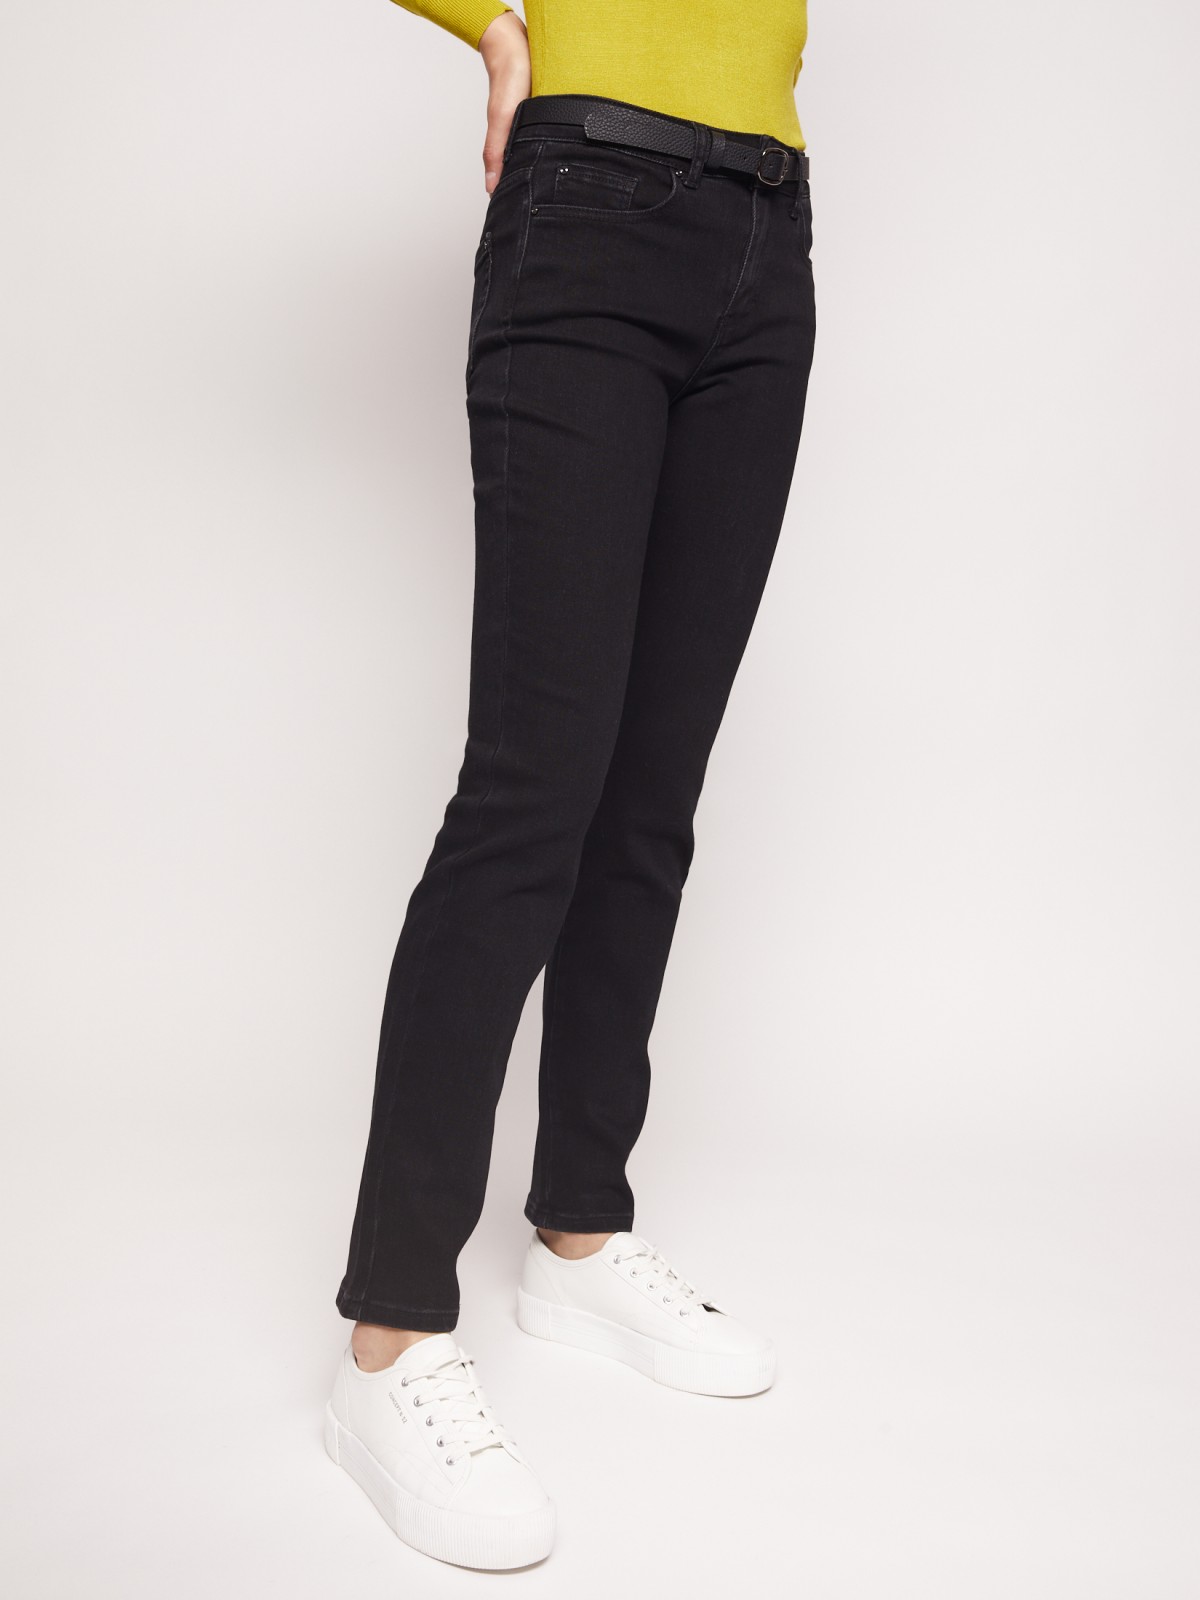 Брюки джинсовые zolla 02133714S053, цвет черный, размер 26 - фото 3